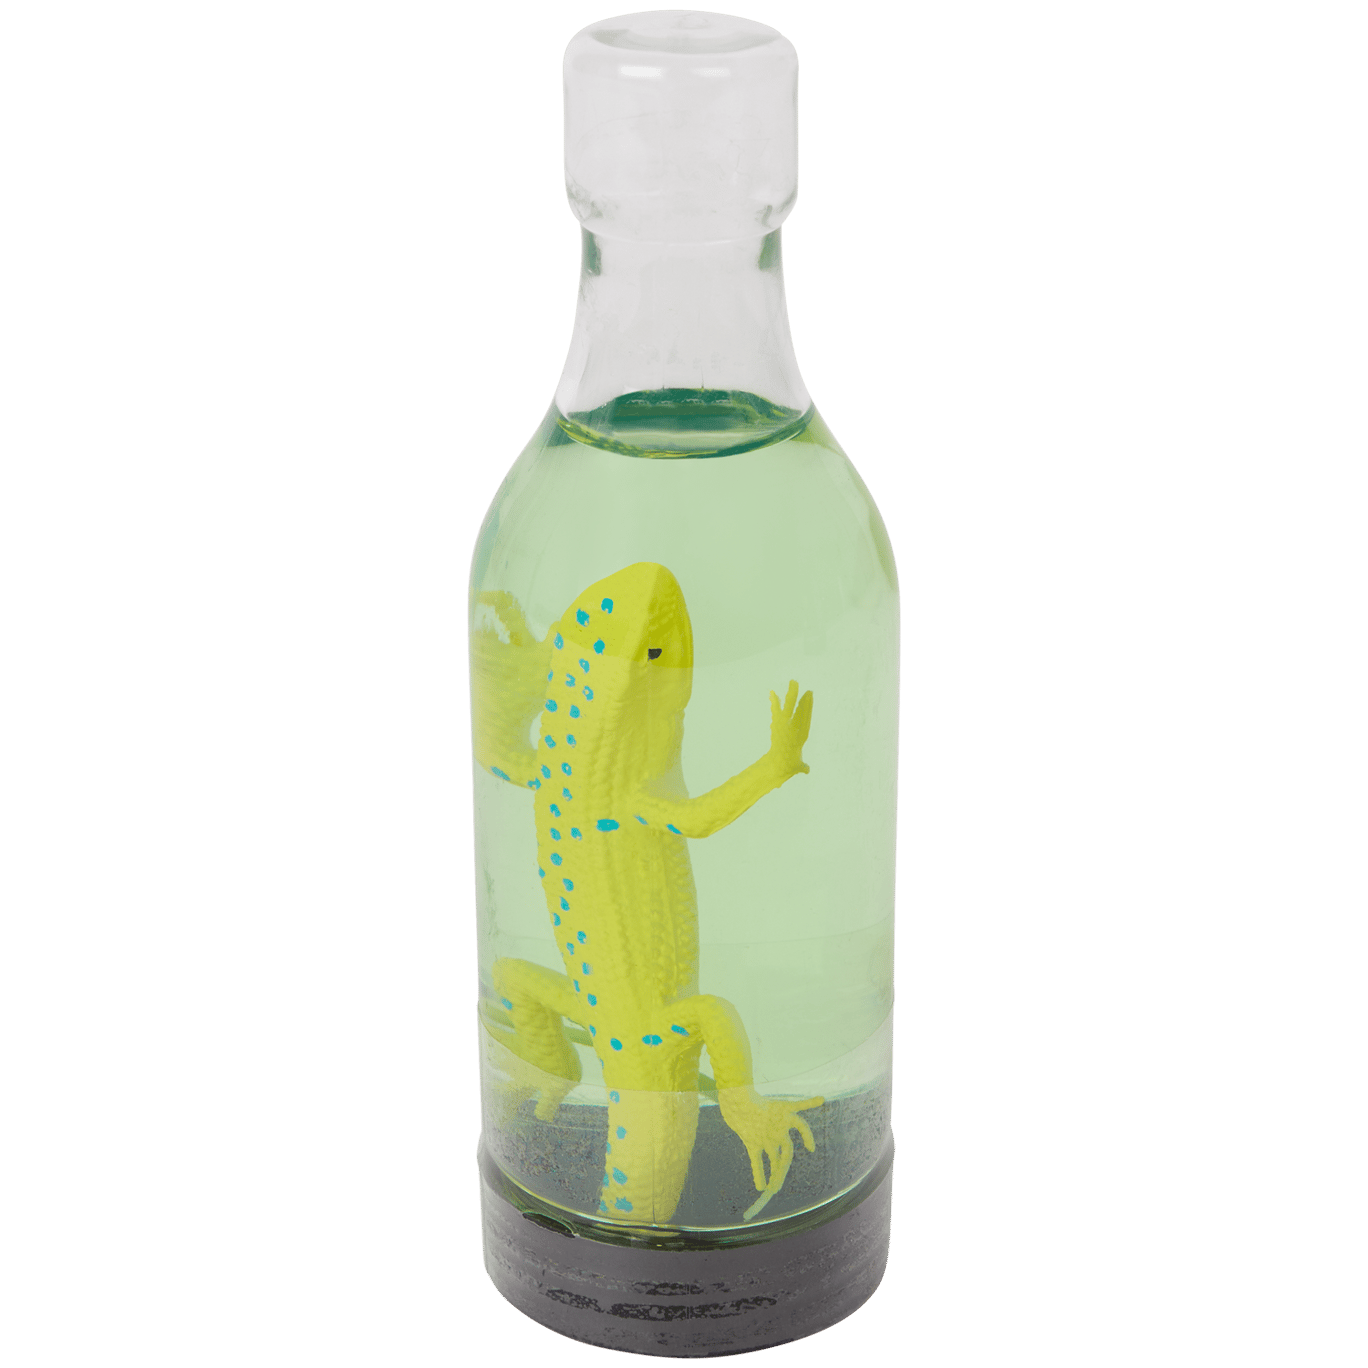 Zviera vo fľaši so slizom